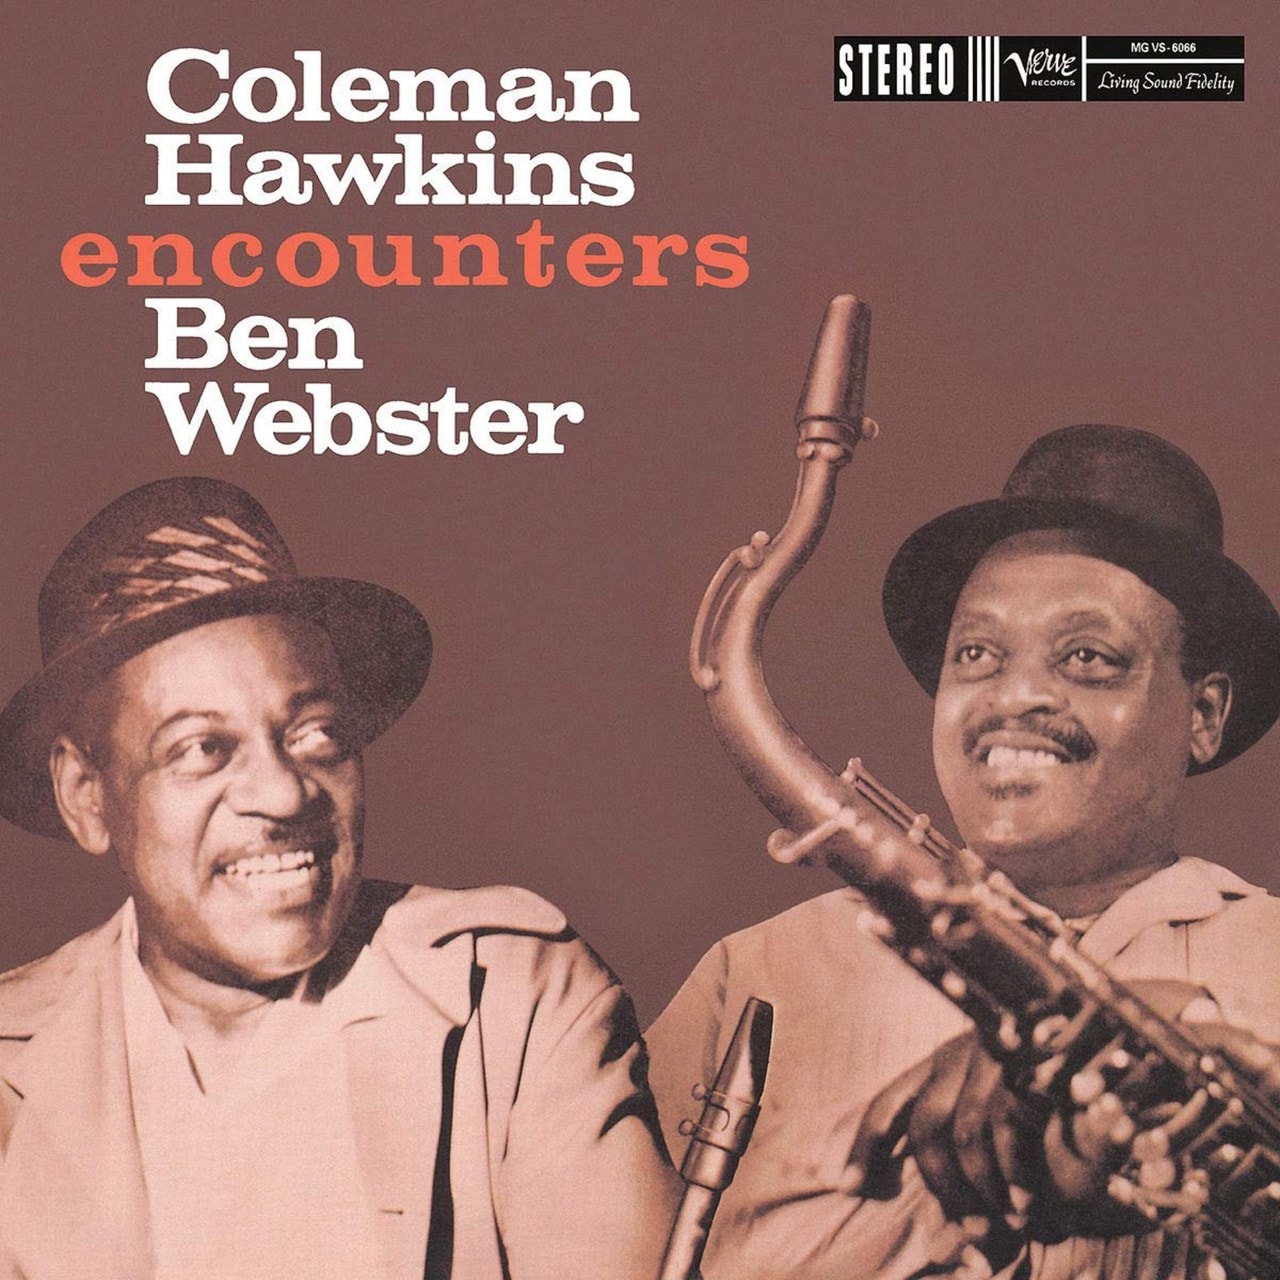 Coleman Hawkins Encounters Ben Webster Vinyl 12" Album Free